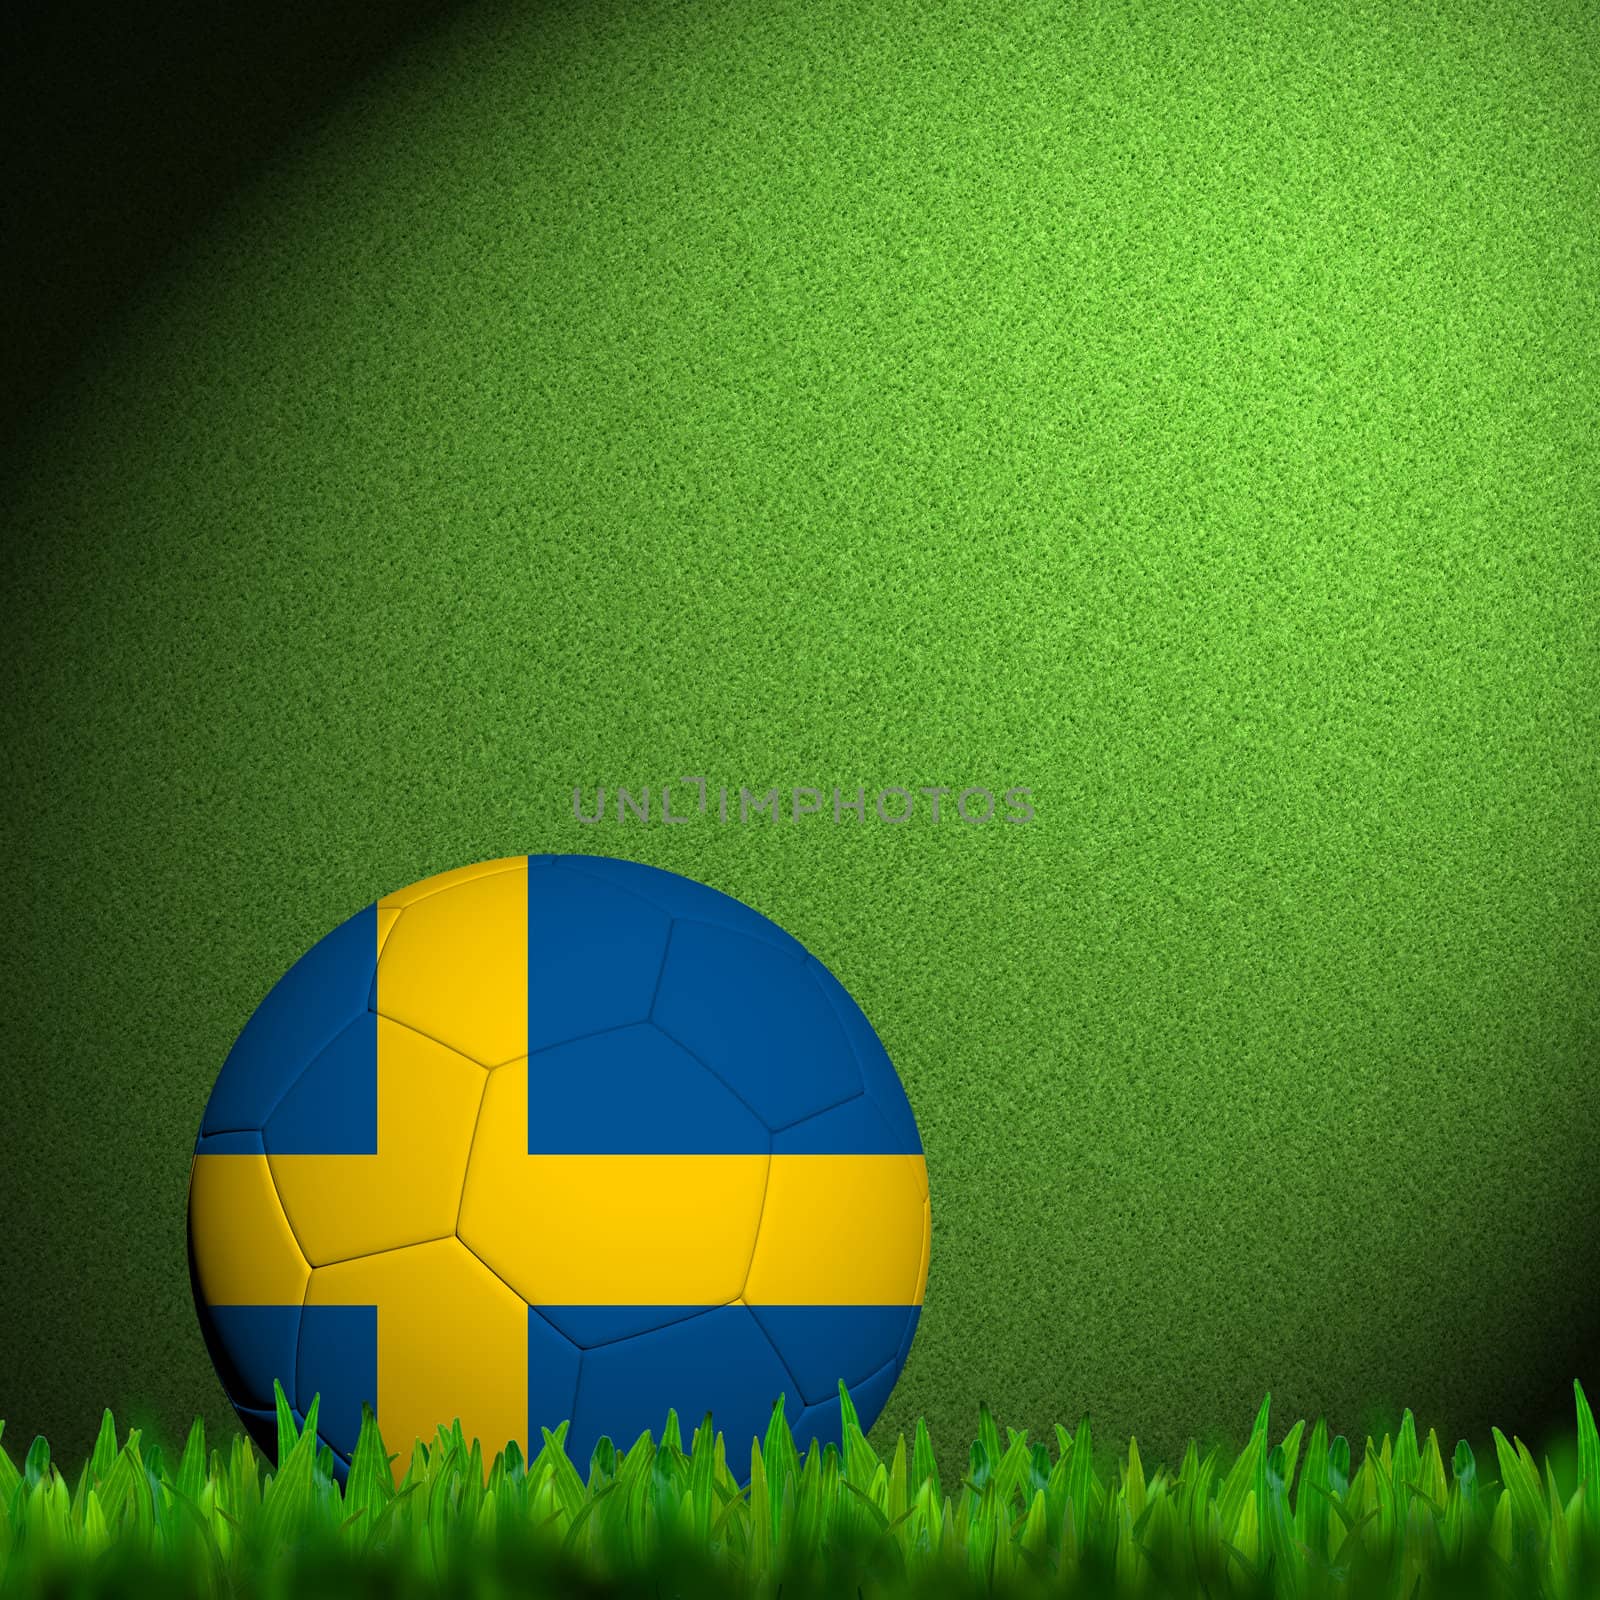 3D Football Sweden Flag Patter in green grass